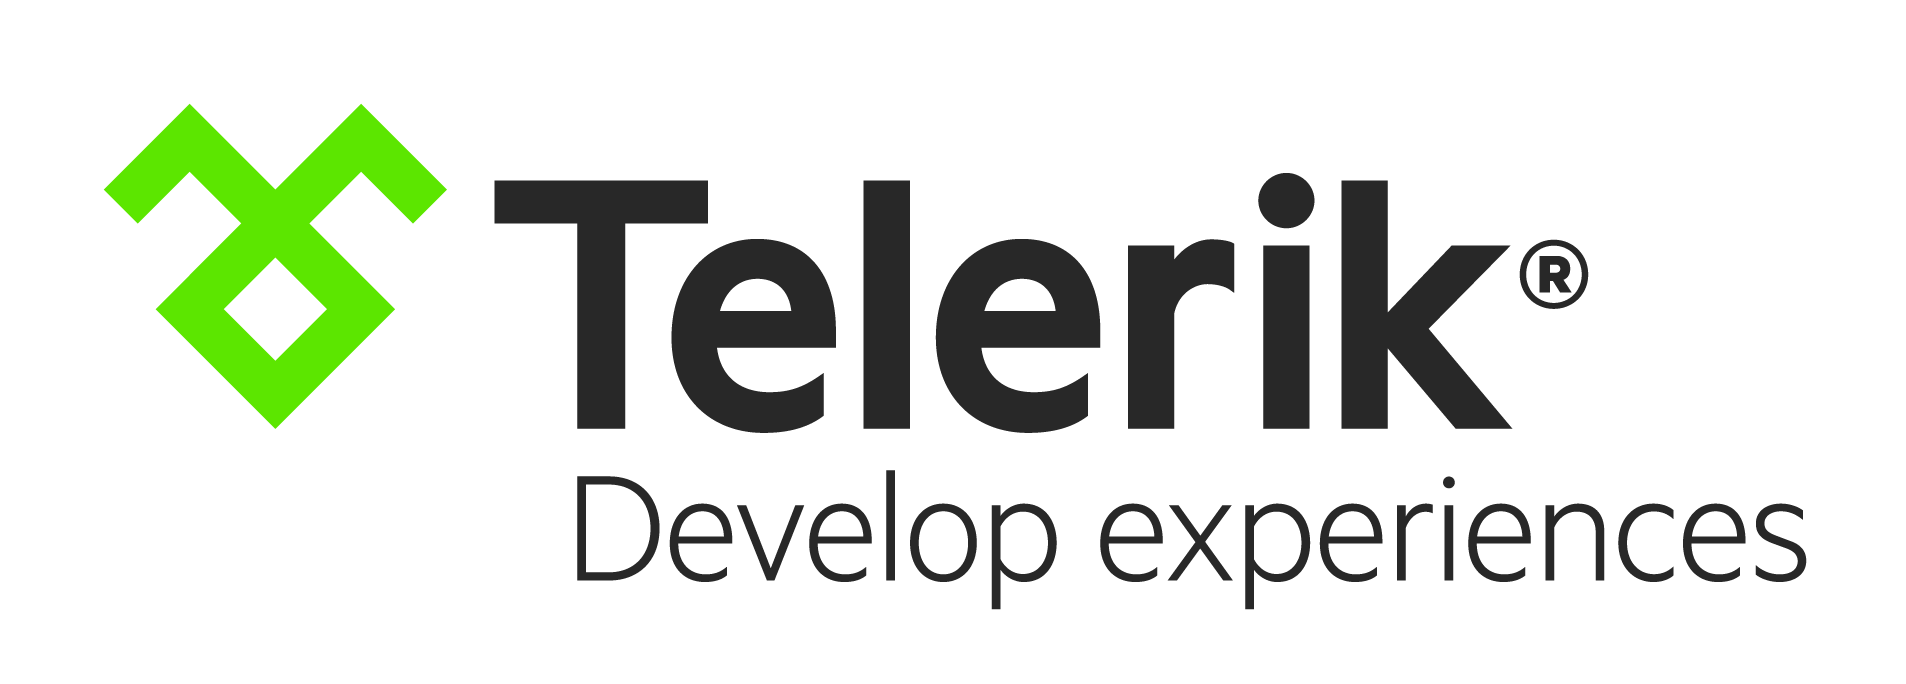 Telerik Platform Receives New Cloud Mobile Development Features